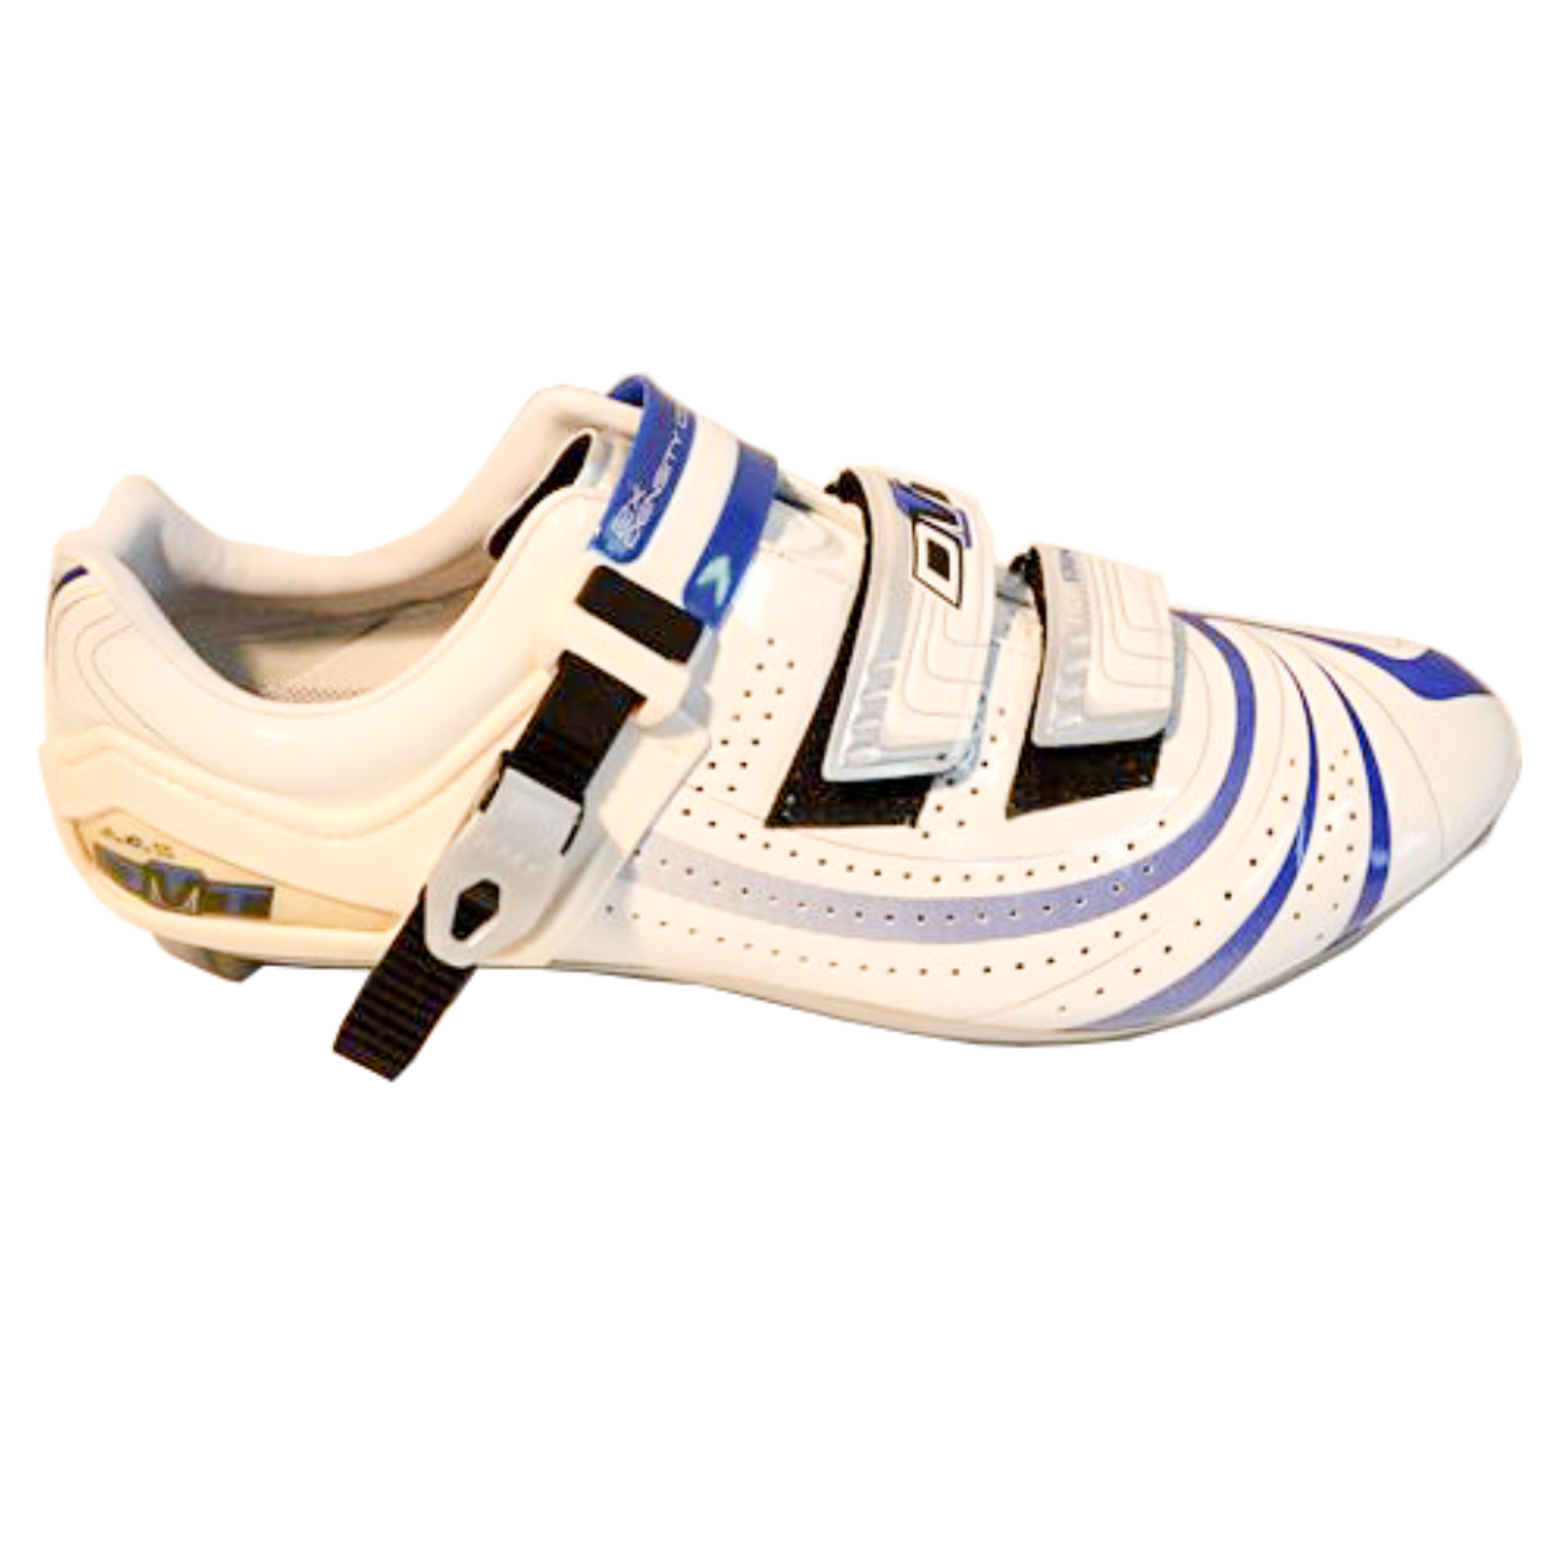 Imagem de Sapato Mag-Force branco/azul - sola magnésio